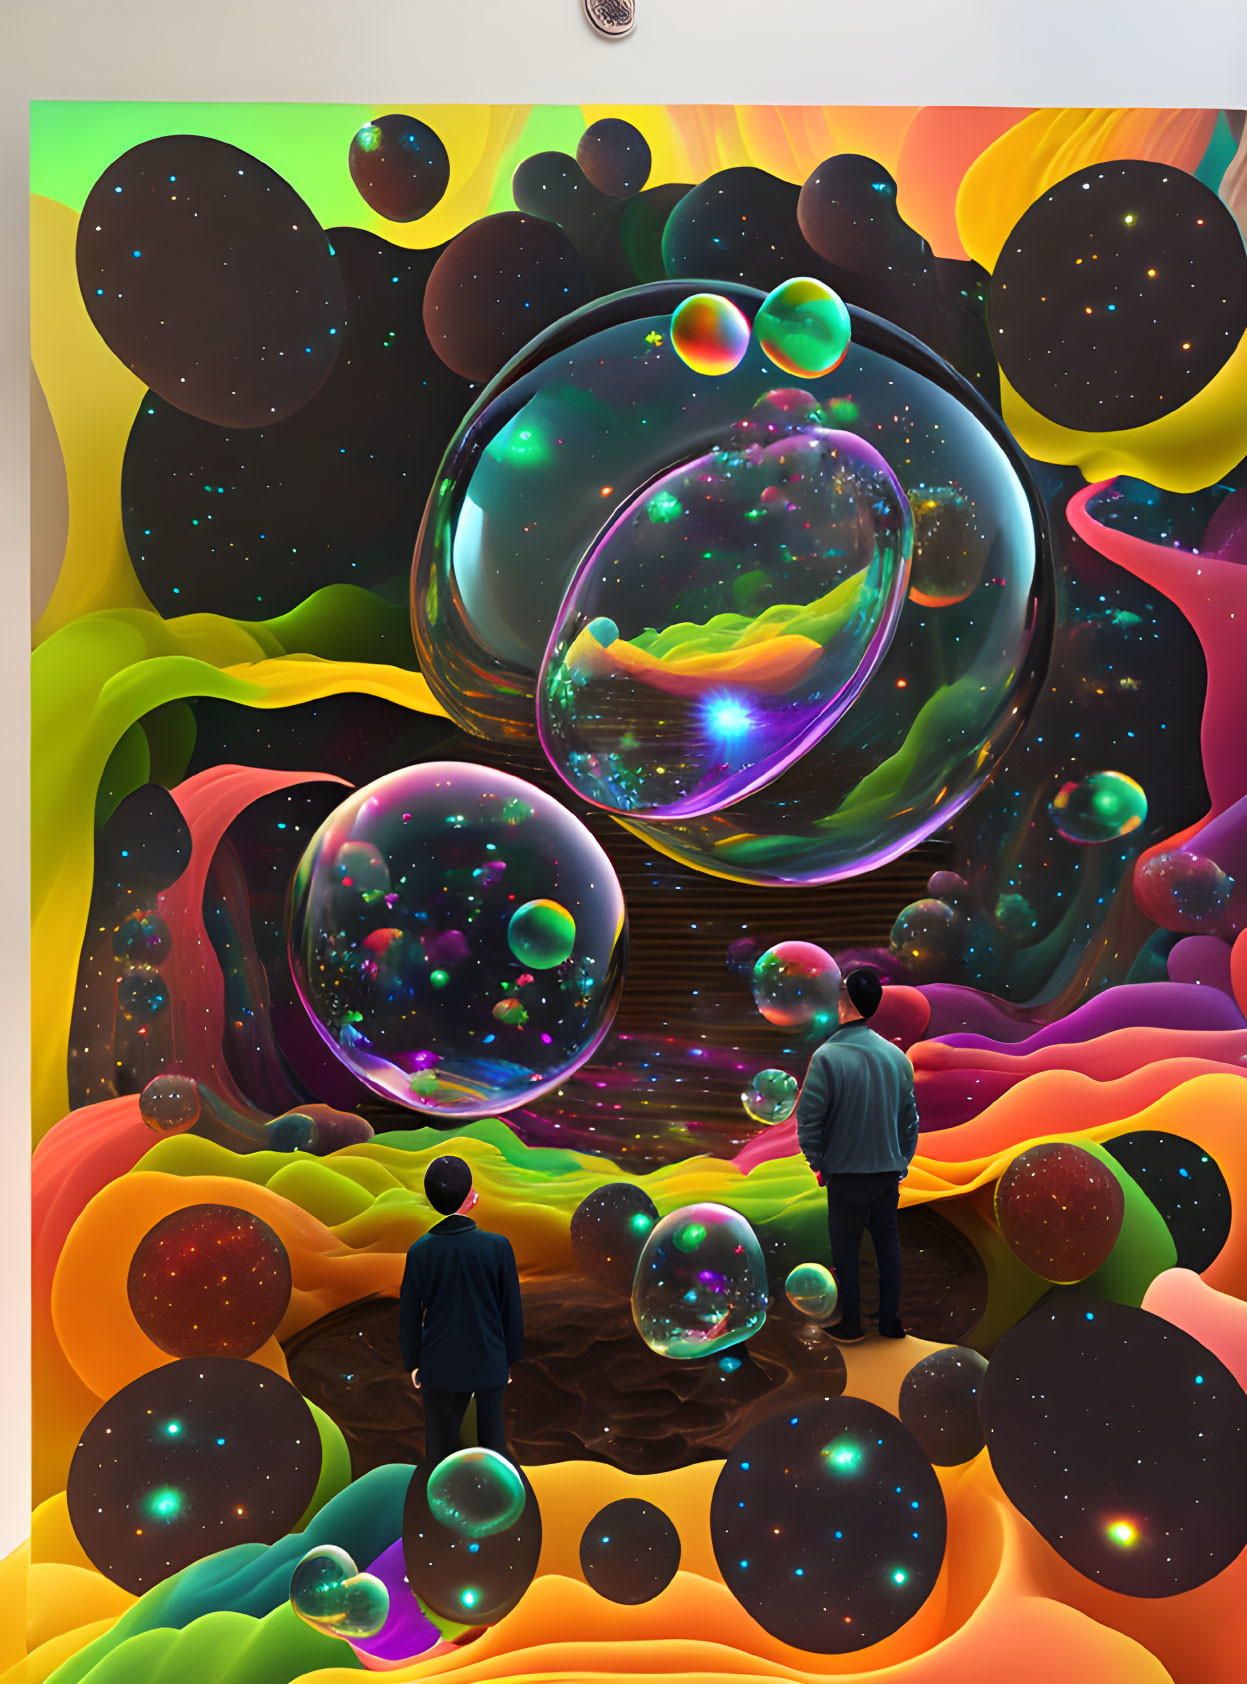 Dimensional bubble zone